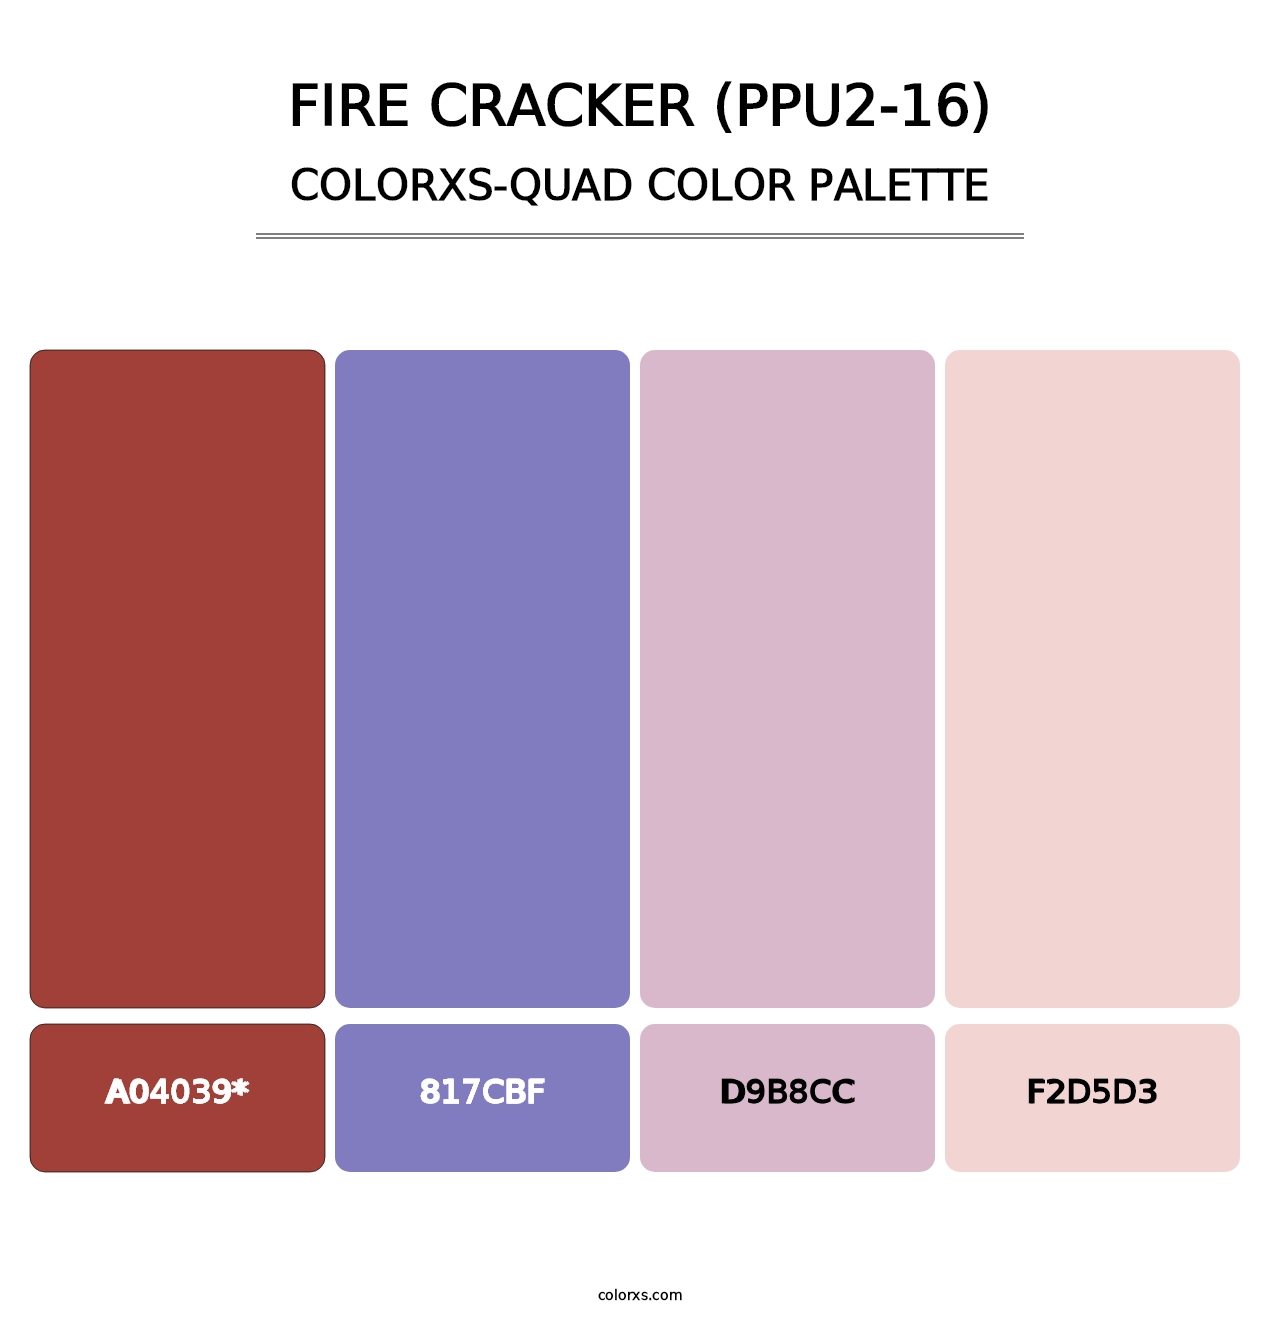 Fire Cracker (PPU2-16) - Colorxs Quad Palette